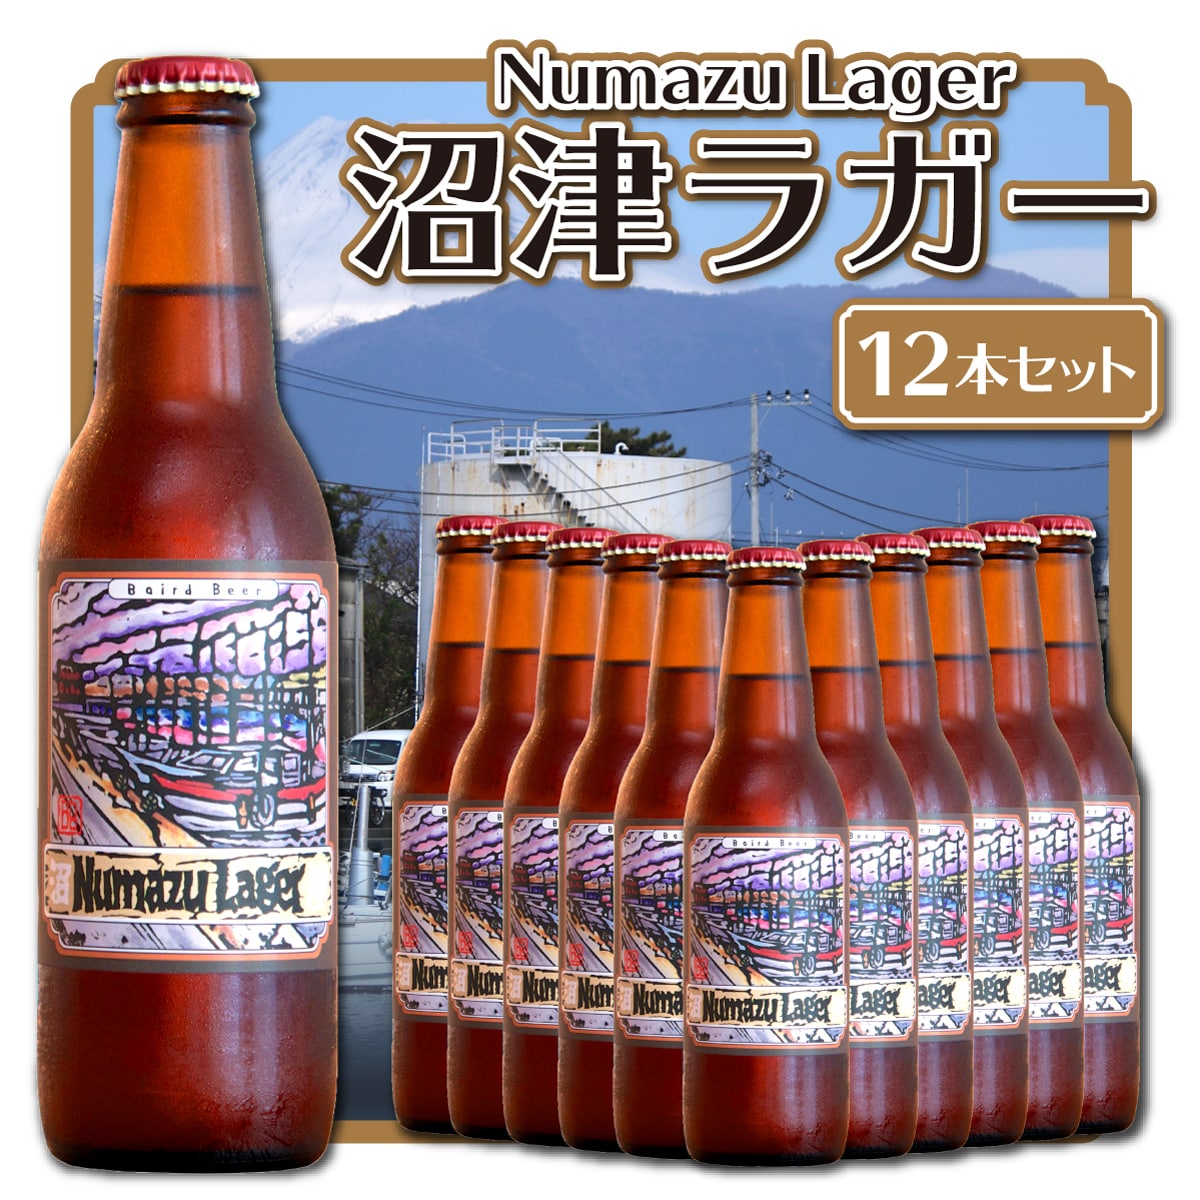 ベアードビール「沼津ラガー」クラフトビール 12本セット